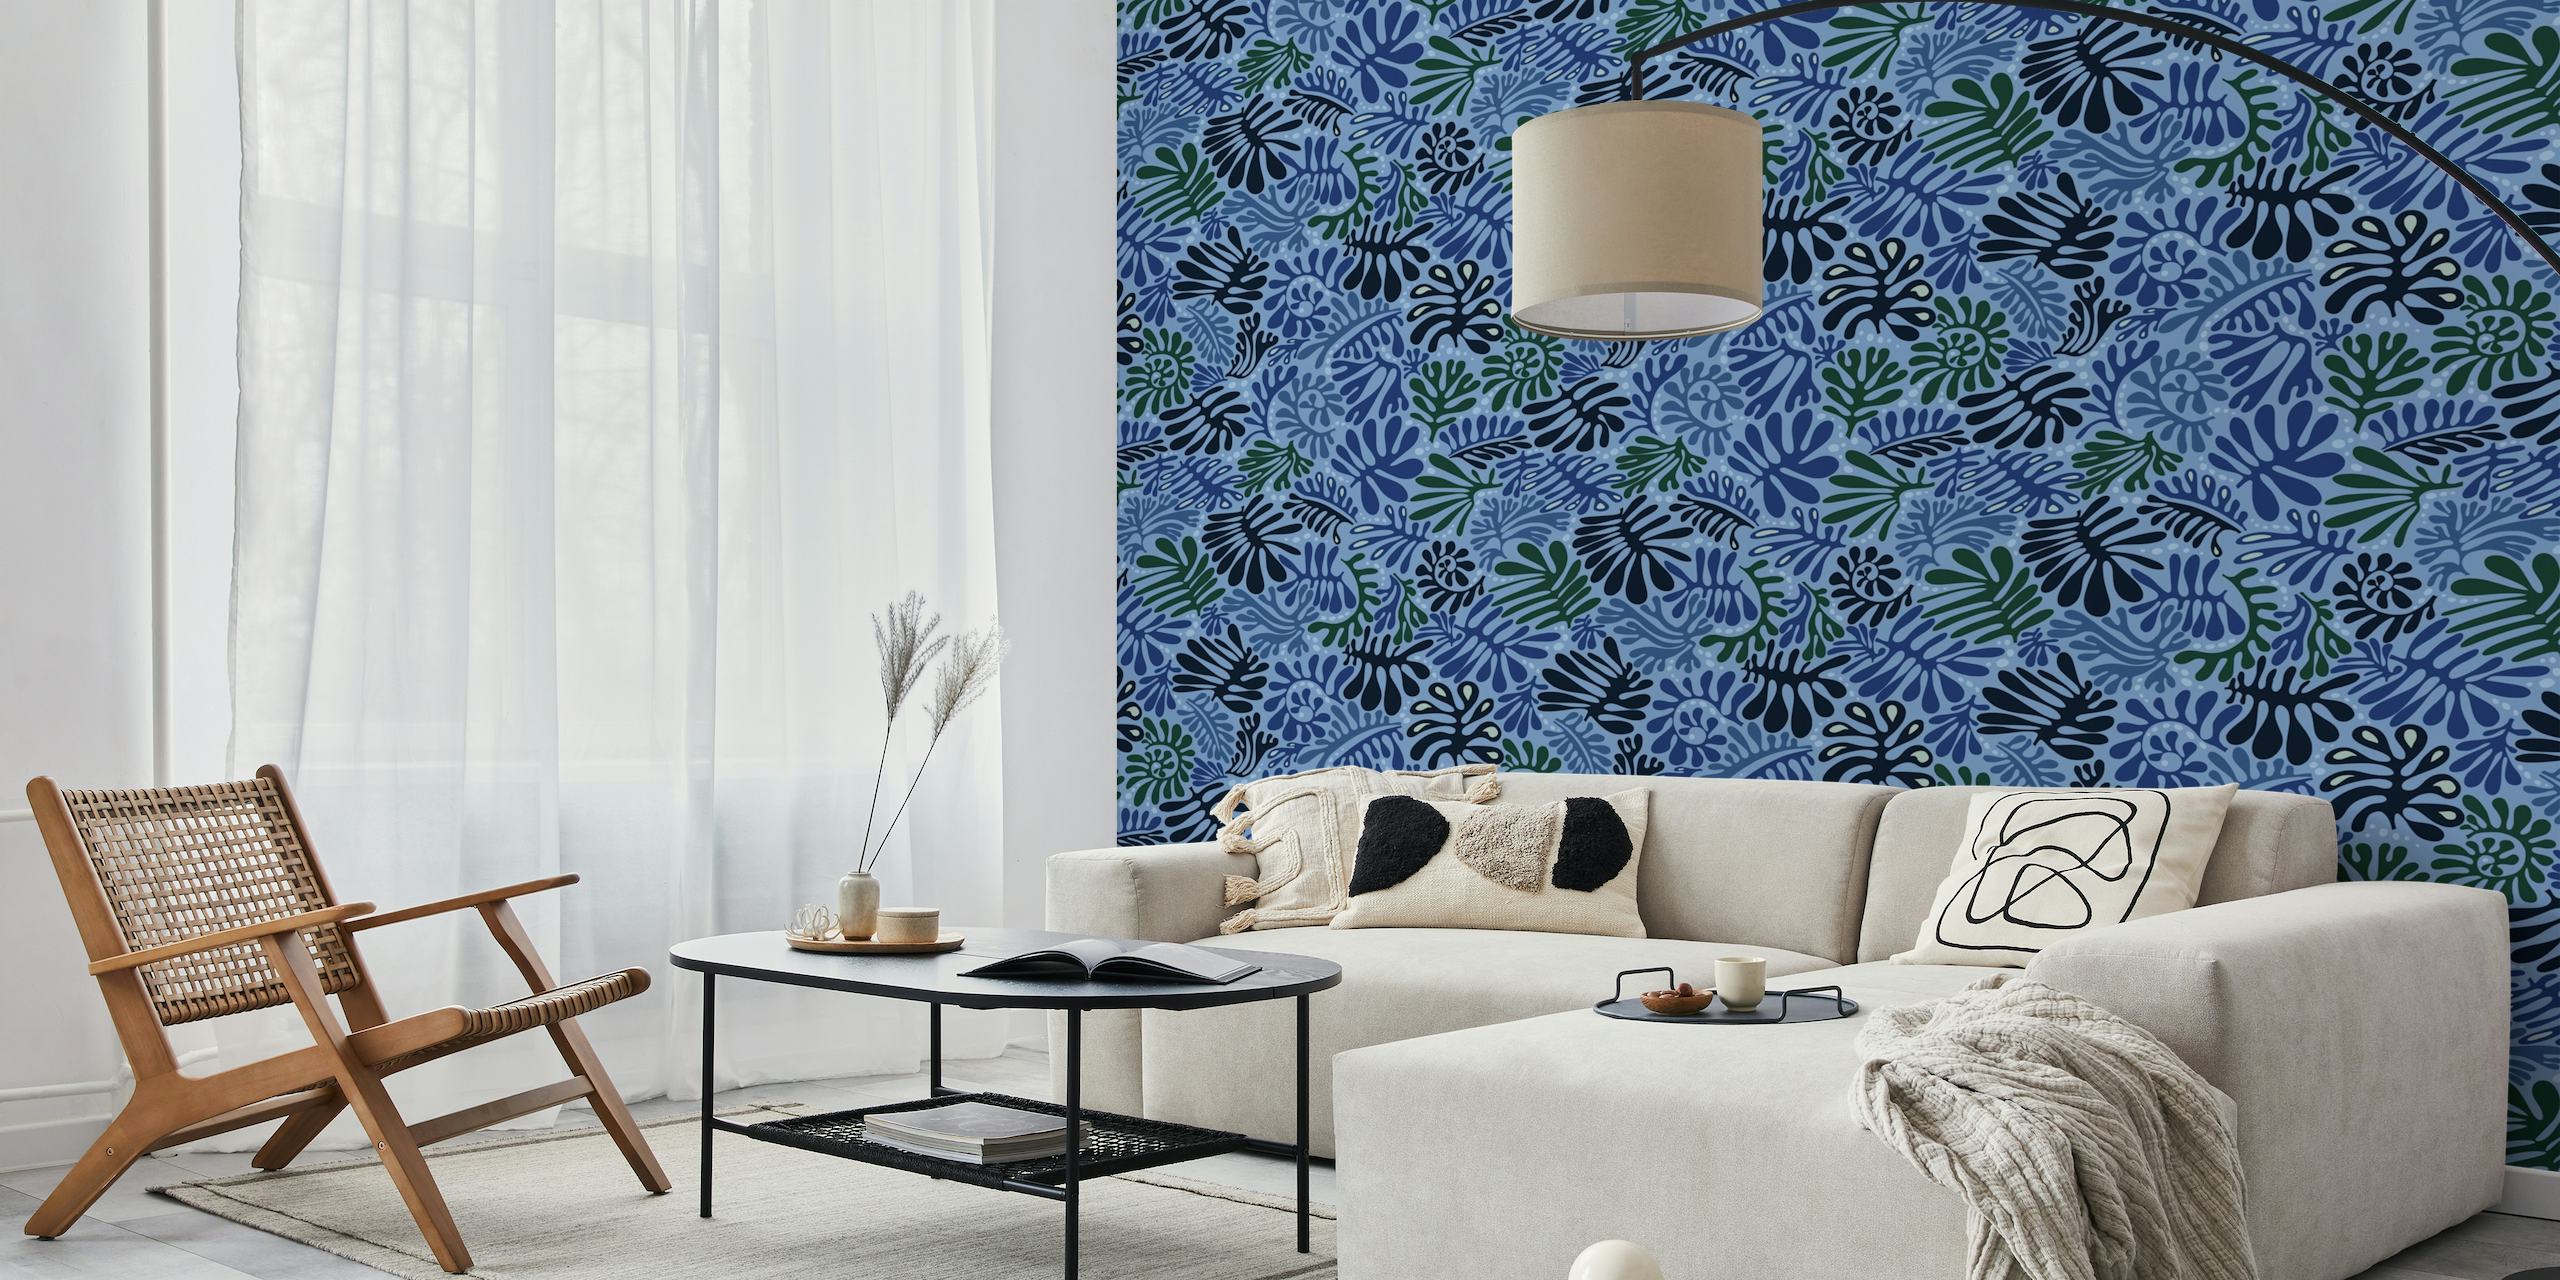 Stylová modrá nástěnná malba se vzorem listů od happywall.com s různými odstíny modré a rostlinnými výřezy.